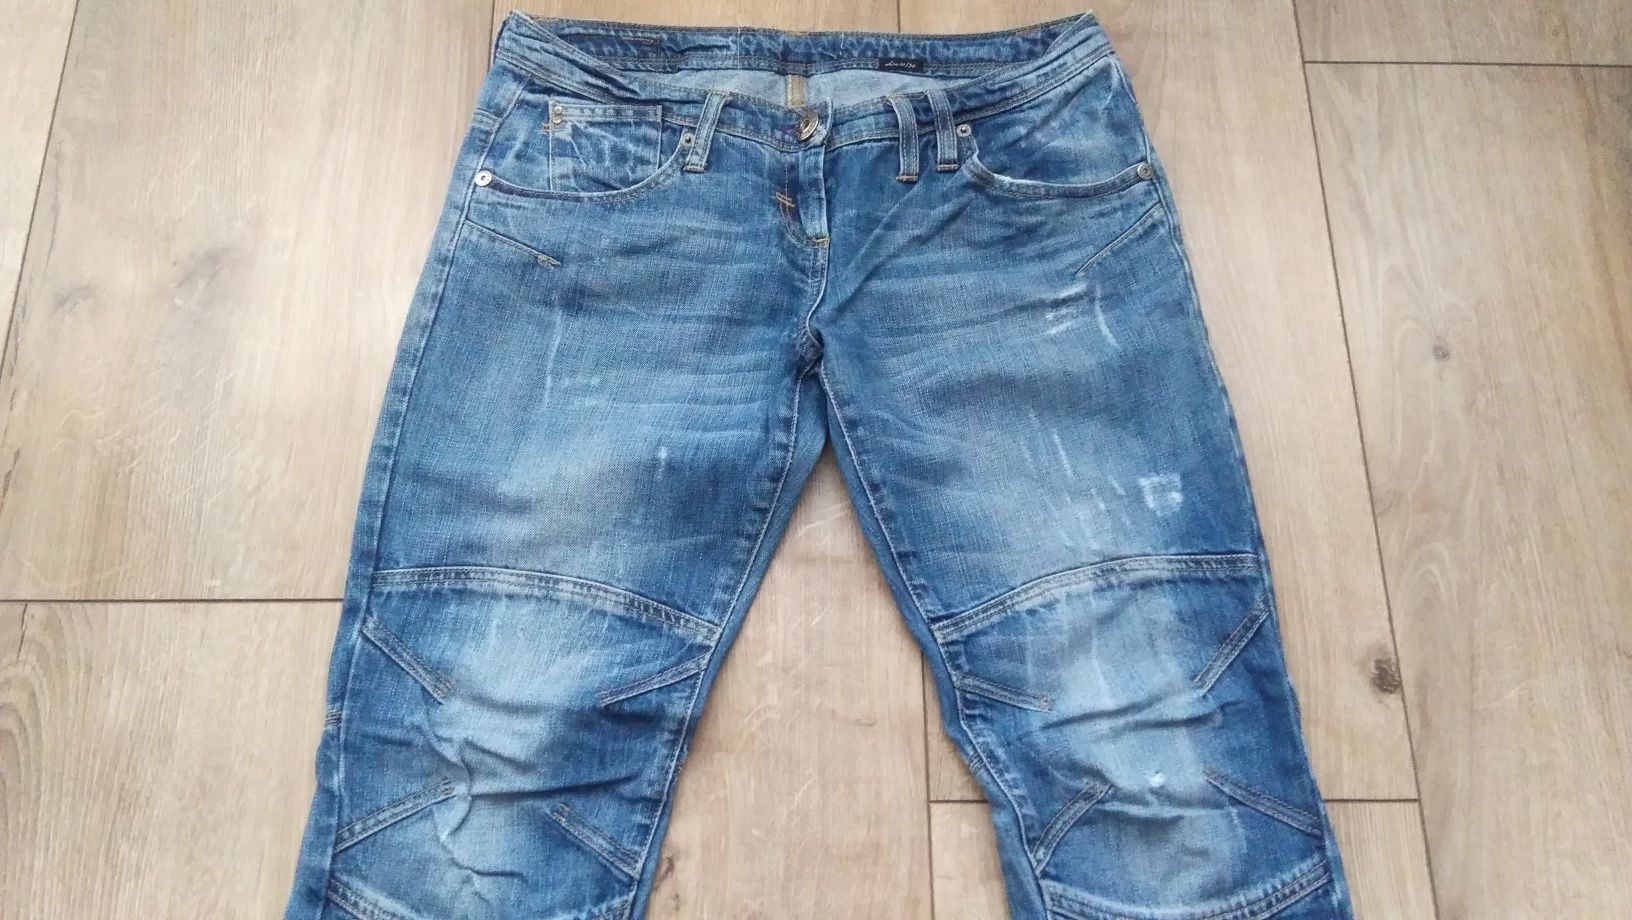 Spodnie jeansowe damskie River Island - 36/S